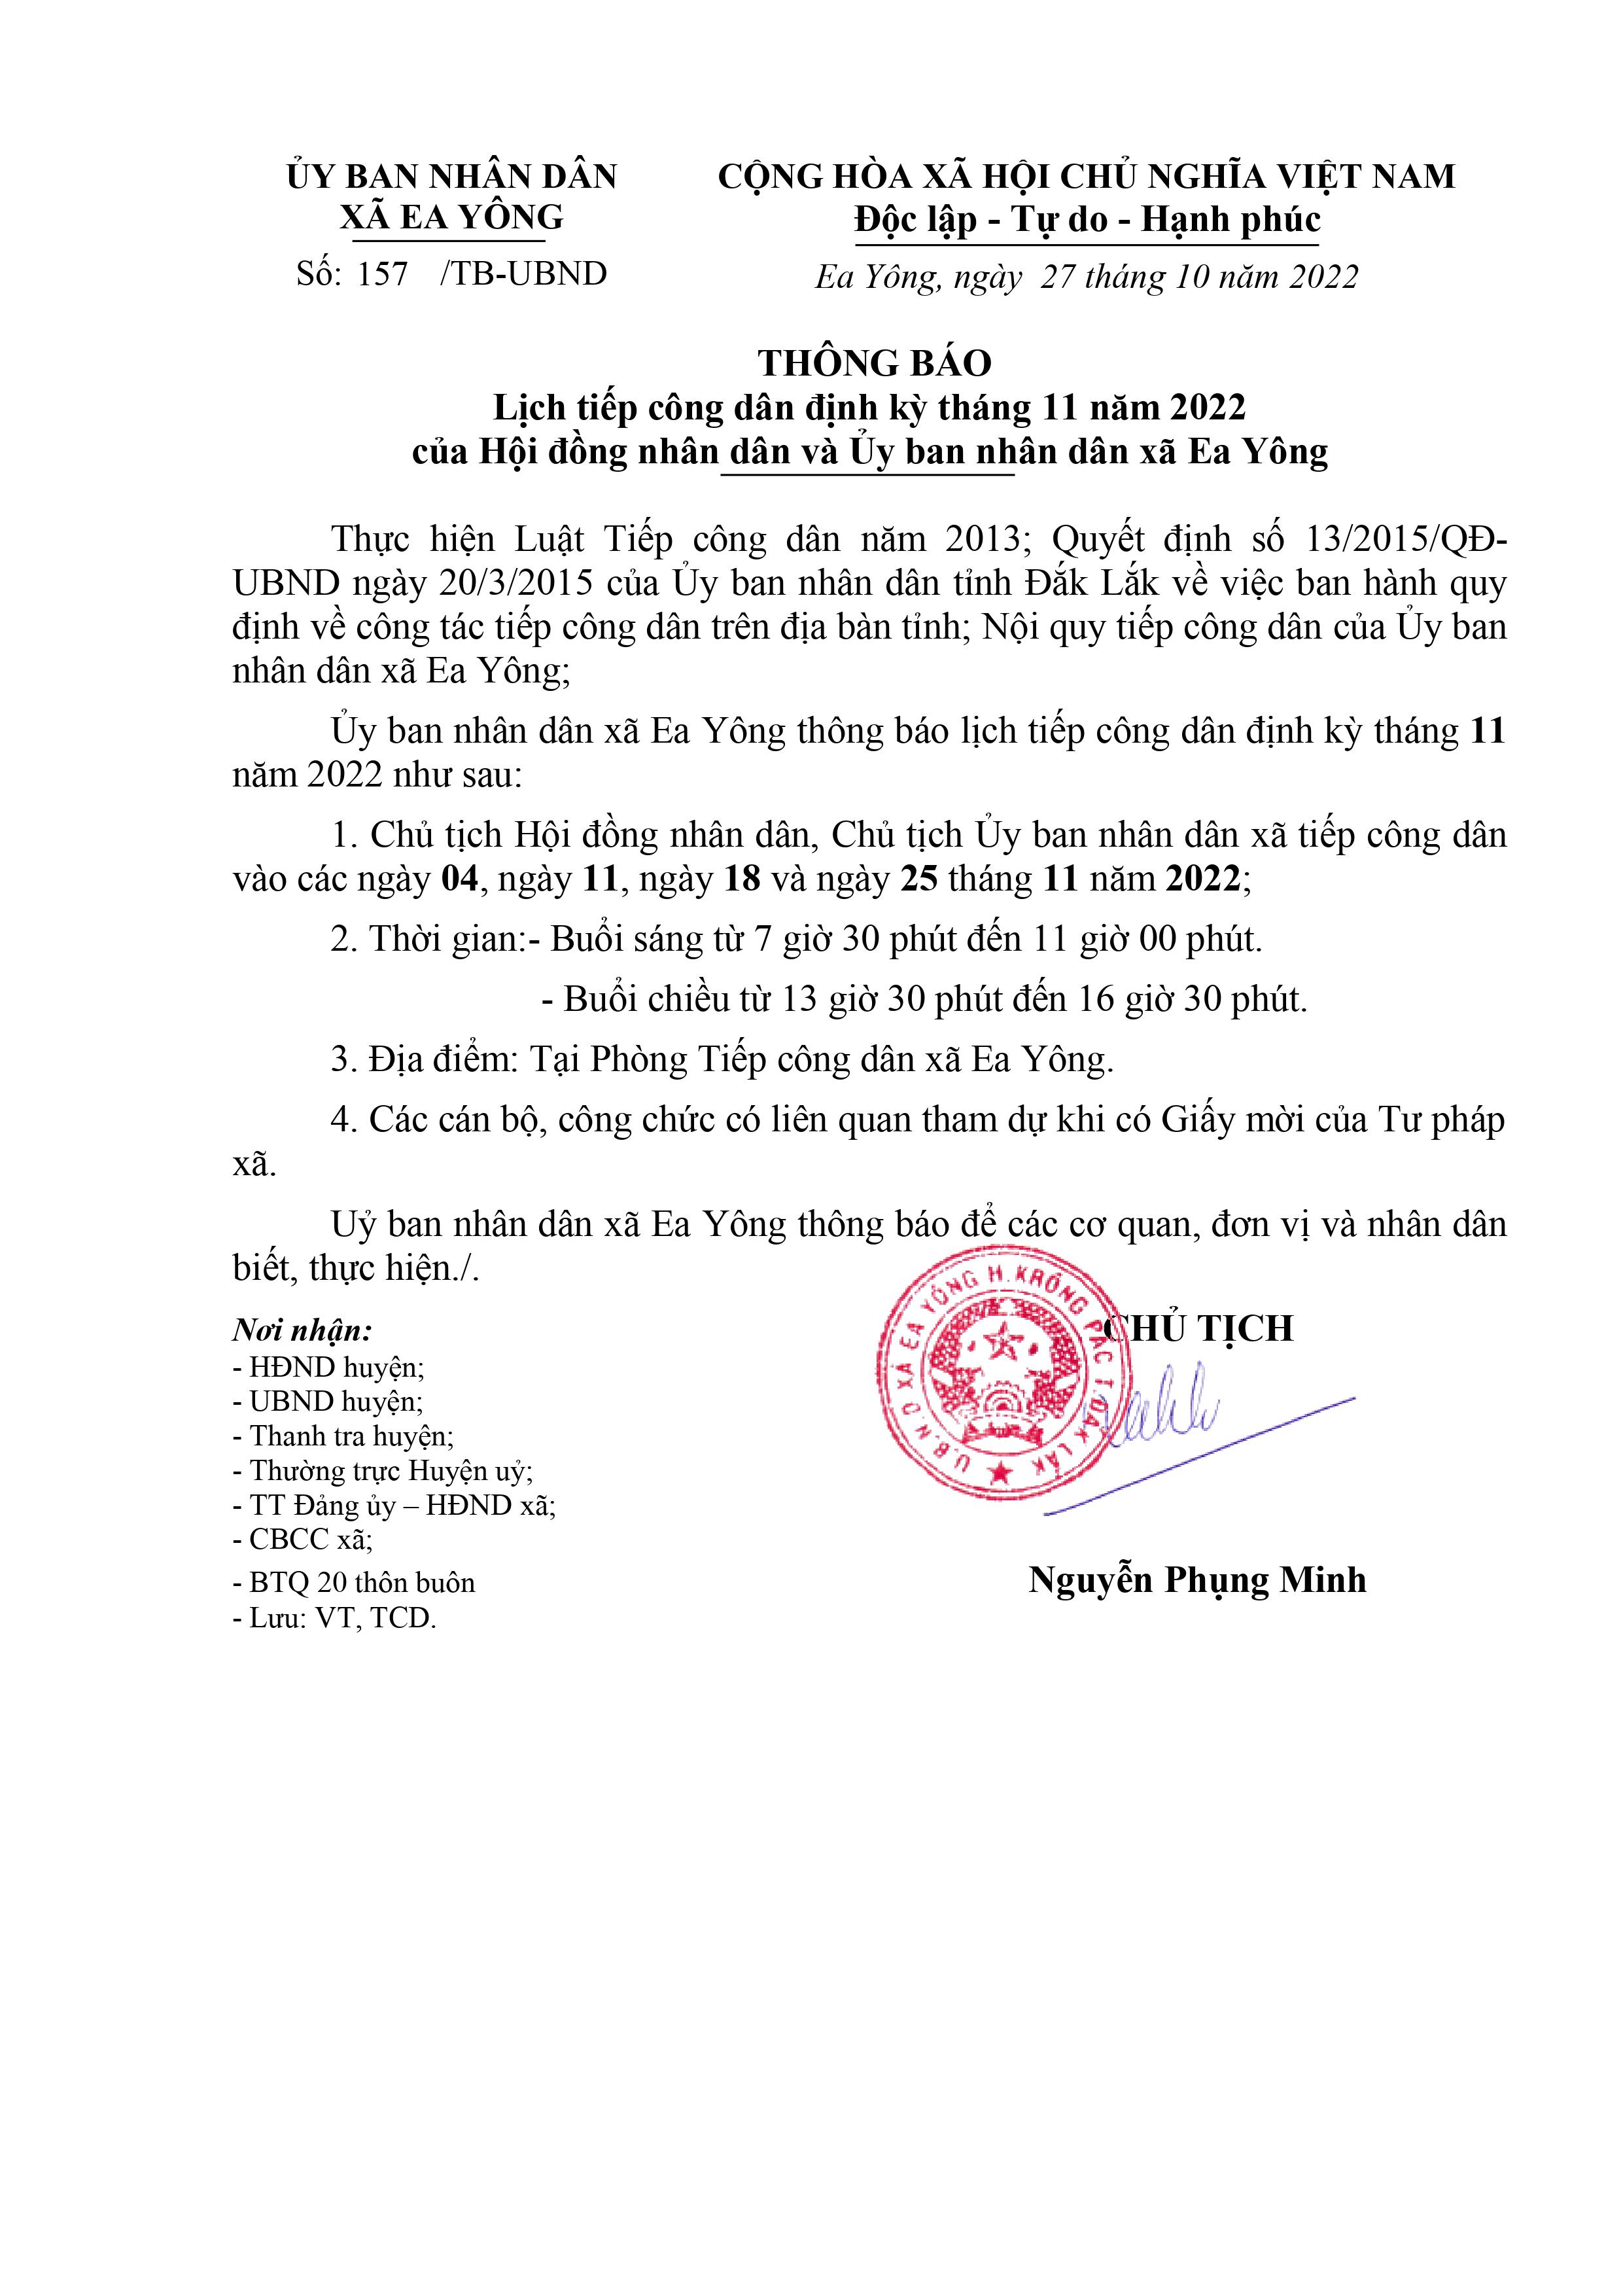 Lịch tiếp công dân định kỳ tháng 11 năm 2022 của Hội đồng nhân dân và Ủy ban nhân dân xã Ea Yông